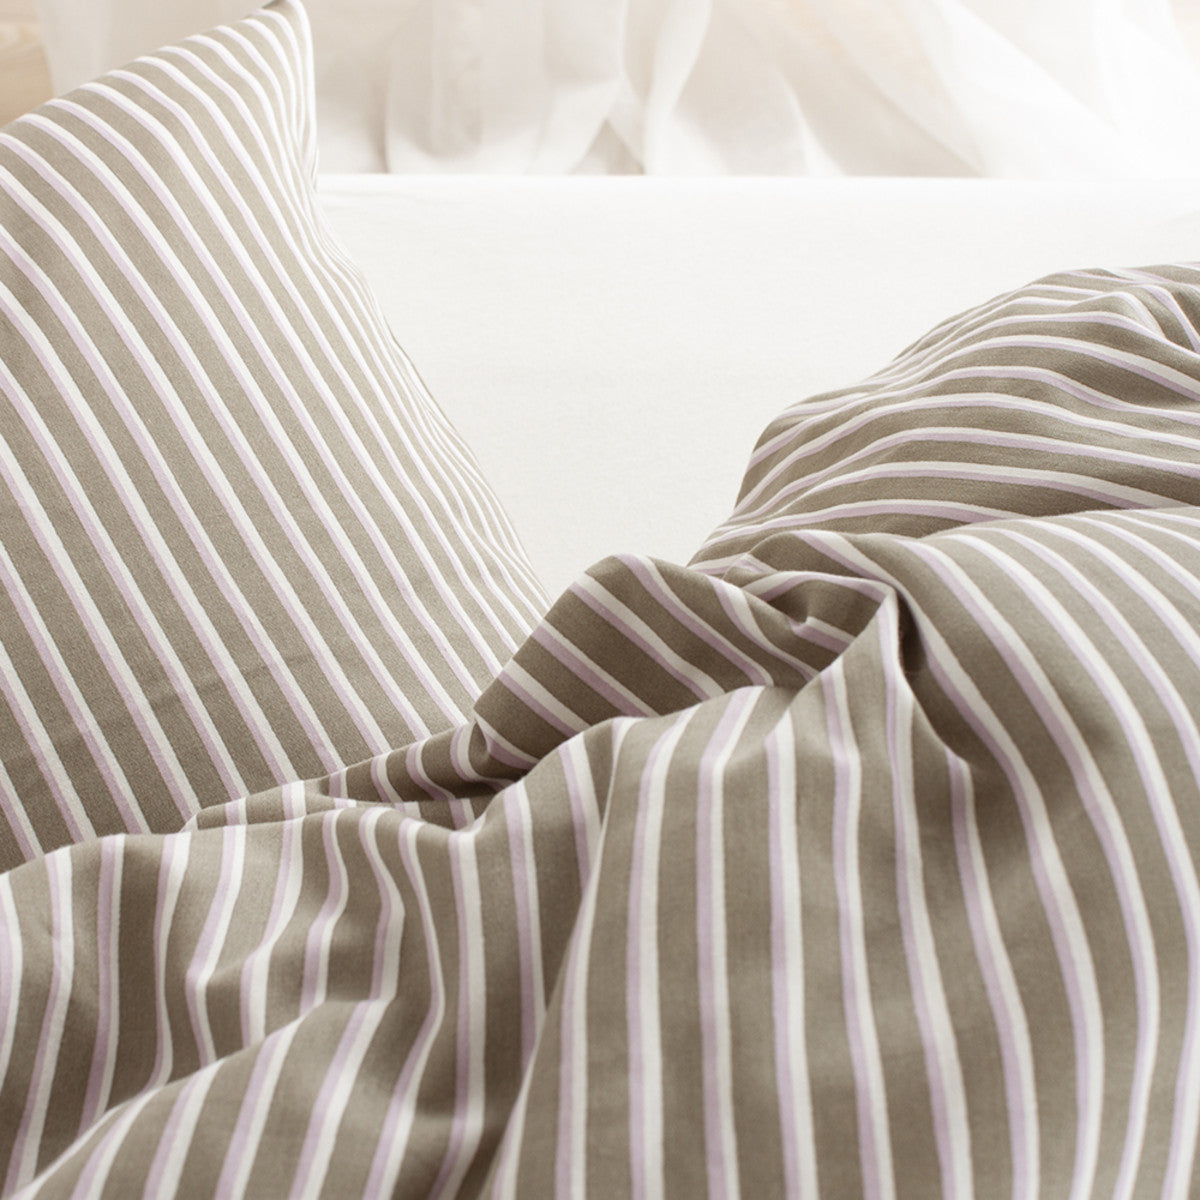 Nordisk tekstil sonny sengetøj olive 140x200cm